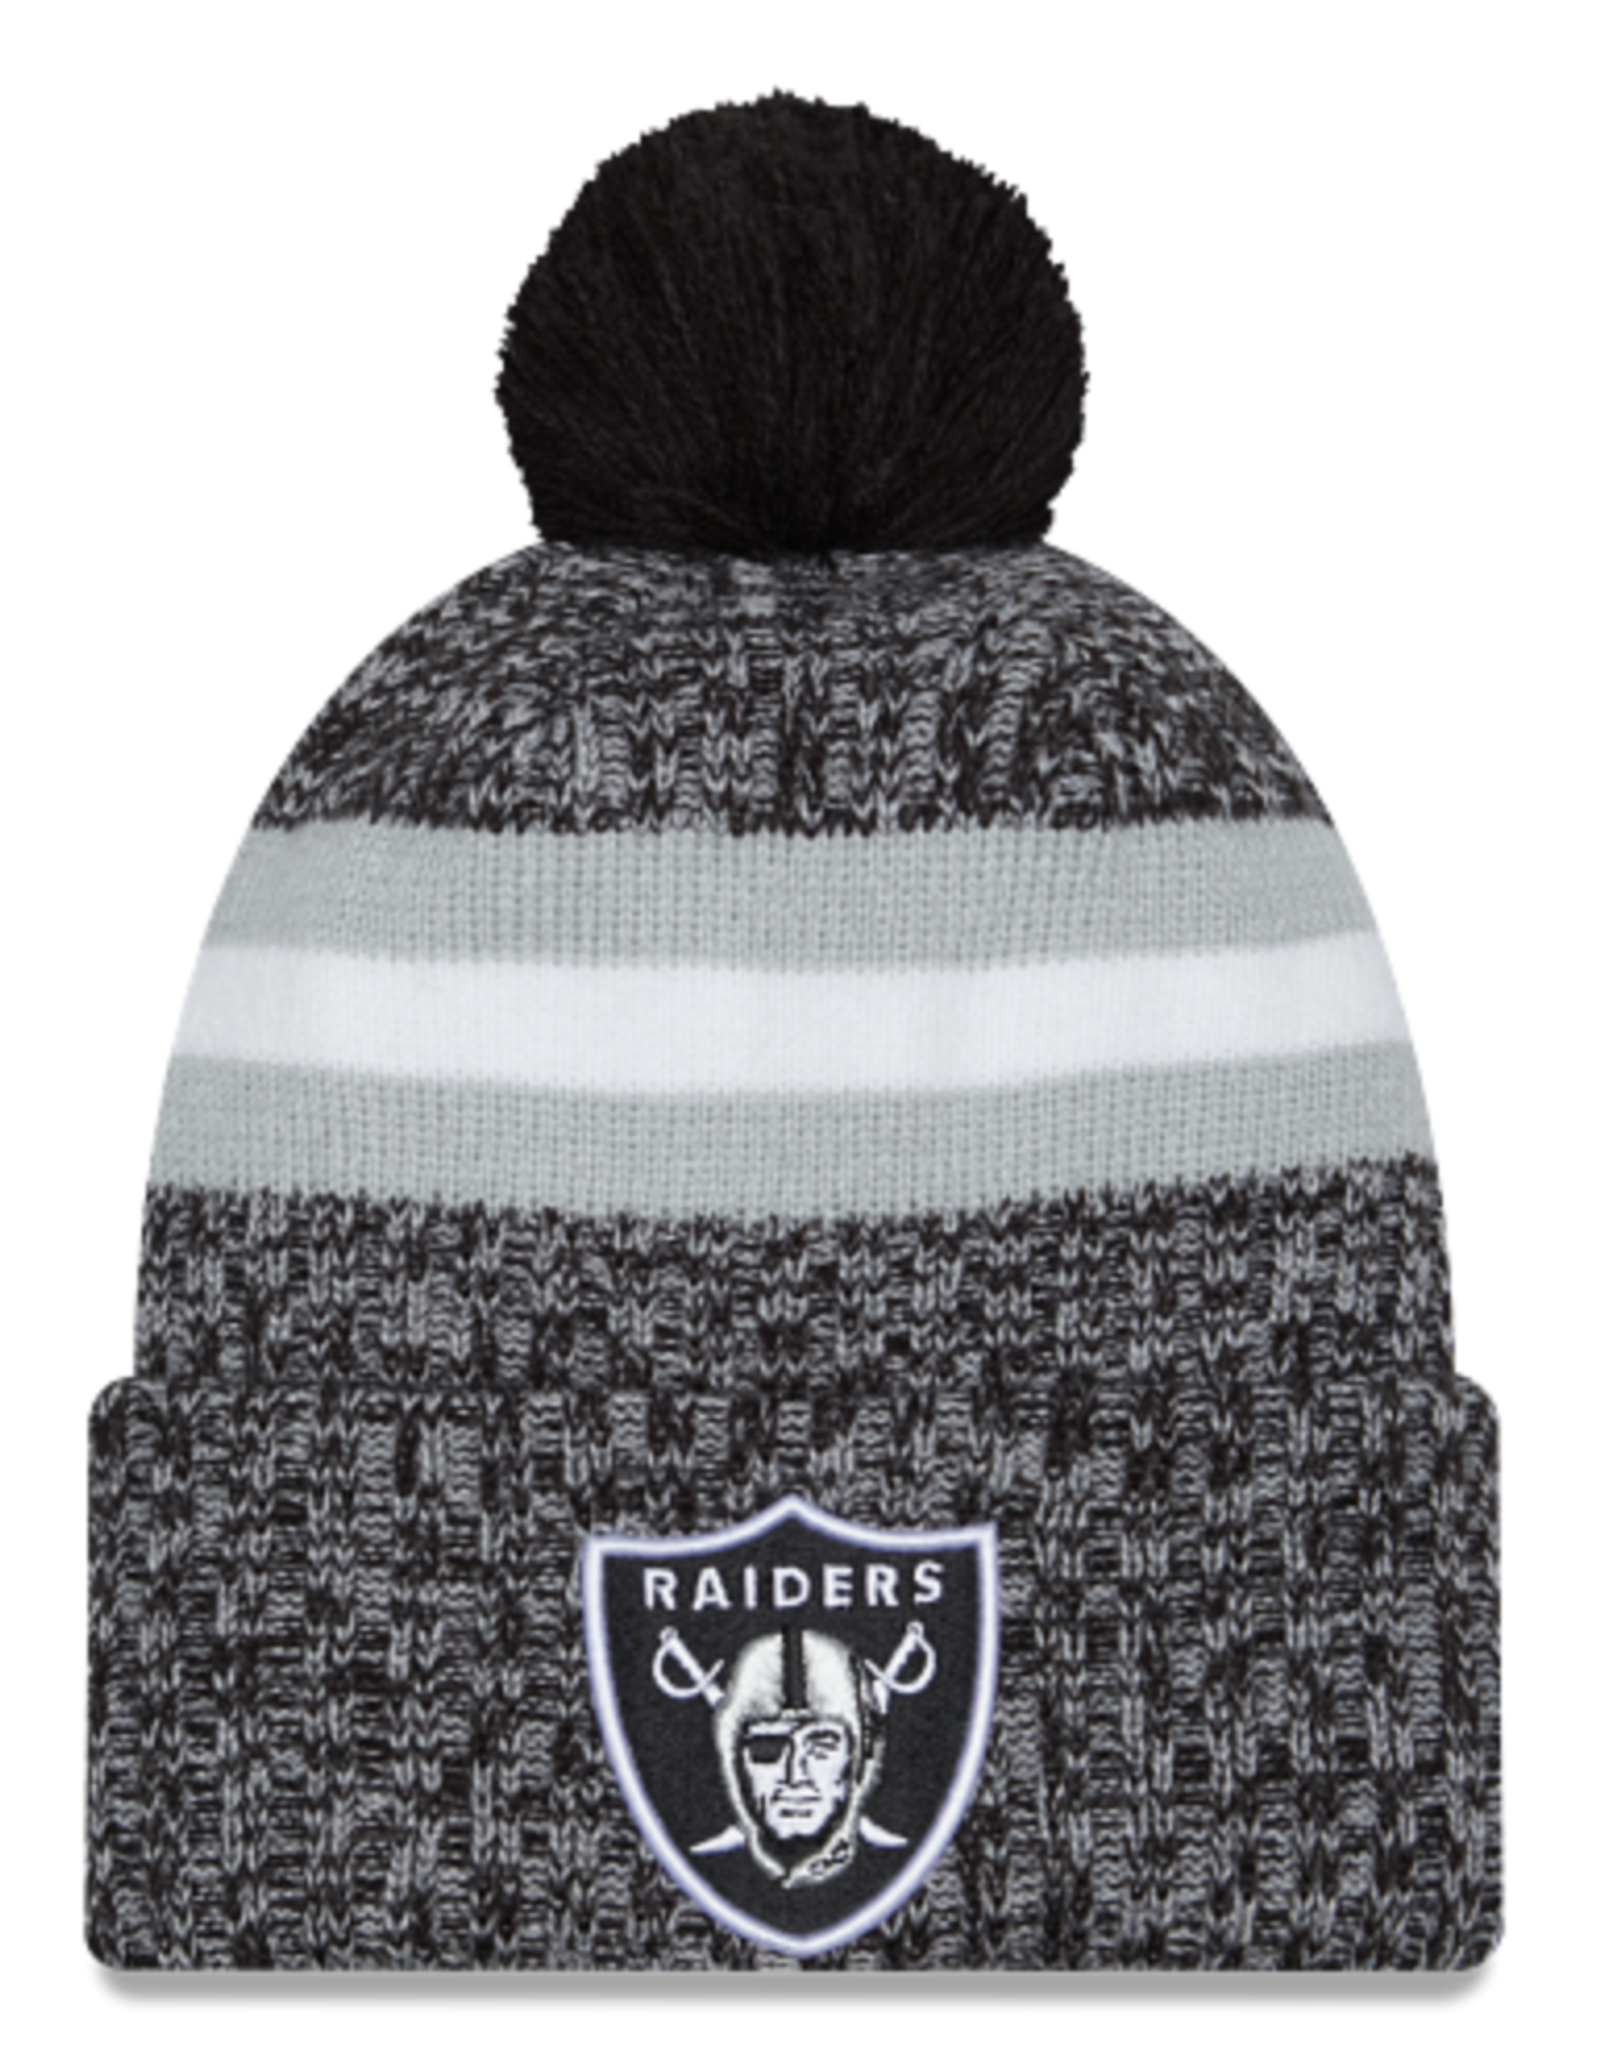 New Era Las Vegas Raiders NFL23 OnField Sideline Sport Knit Hat